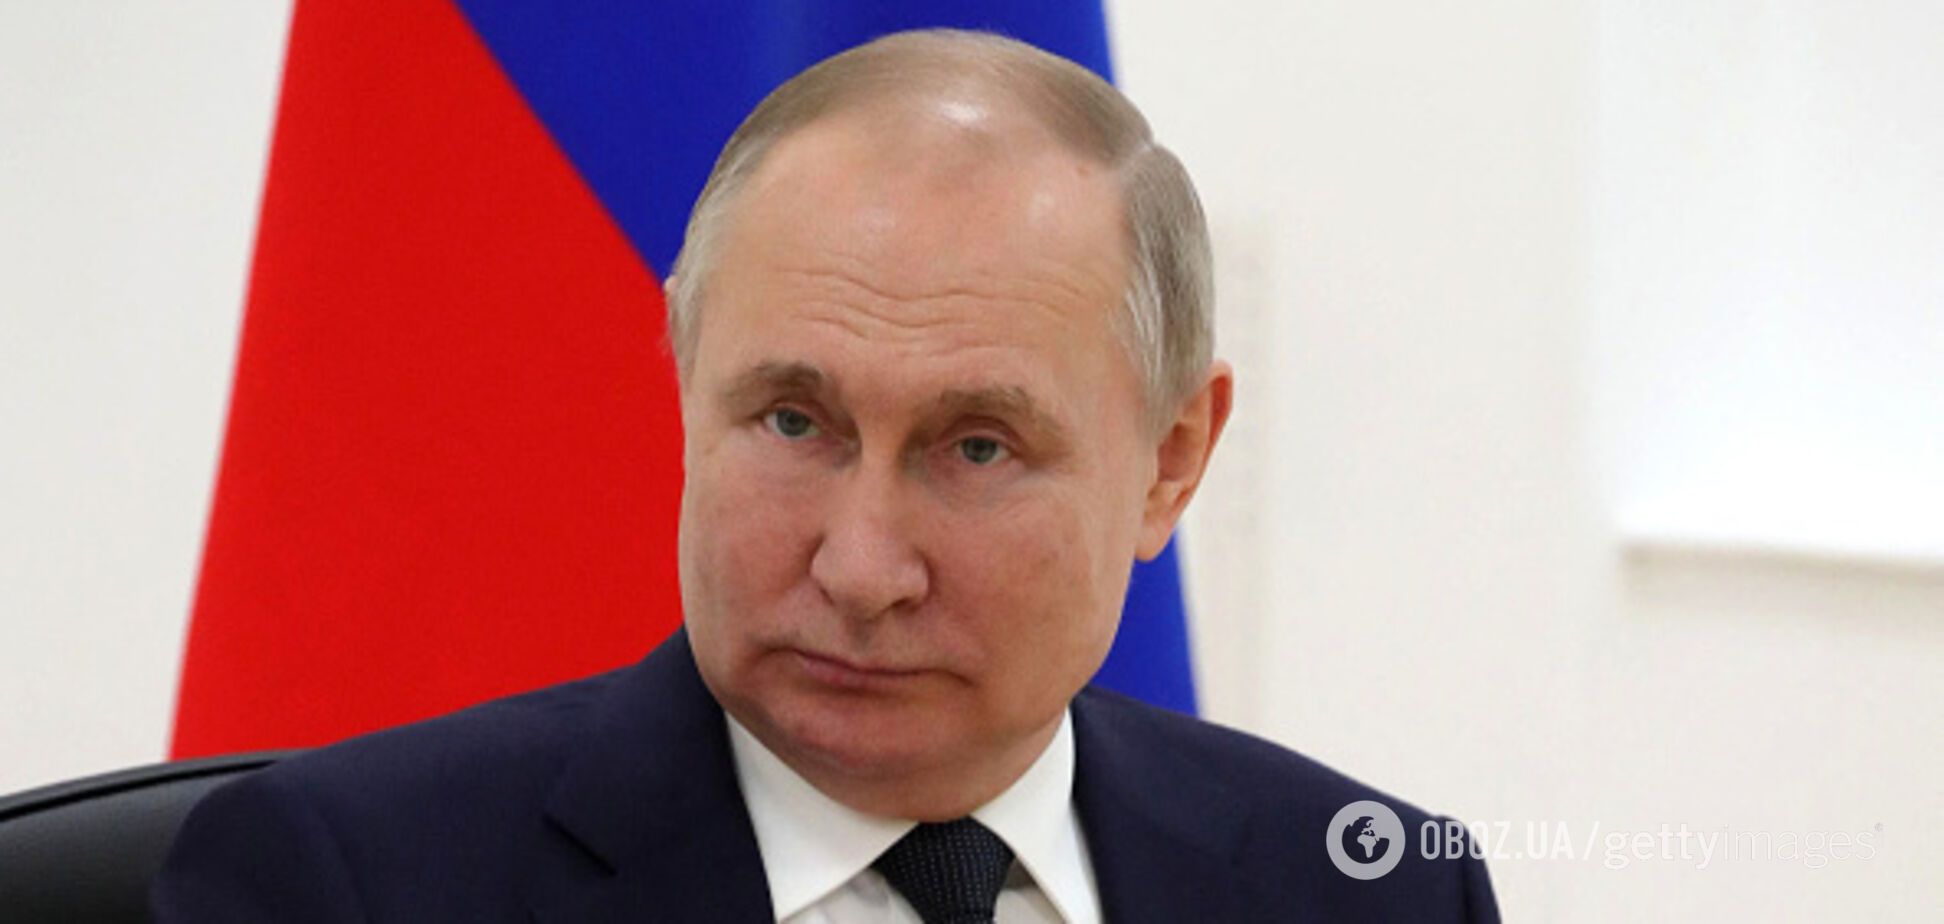 Путіну страшно, він боїться і почувається невпевнено: в поведінці та міміці президента Росії помітили знаки